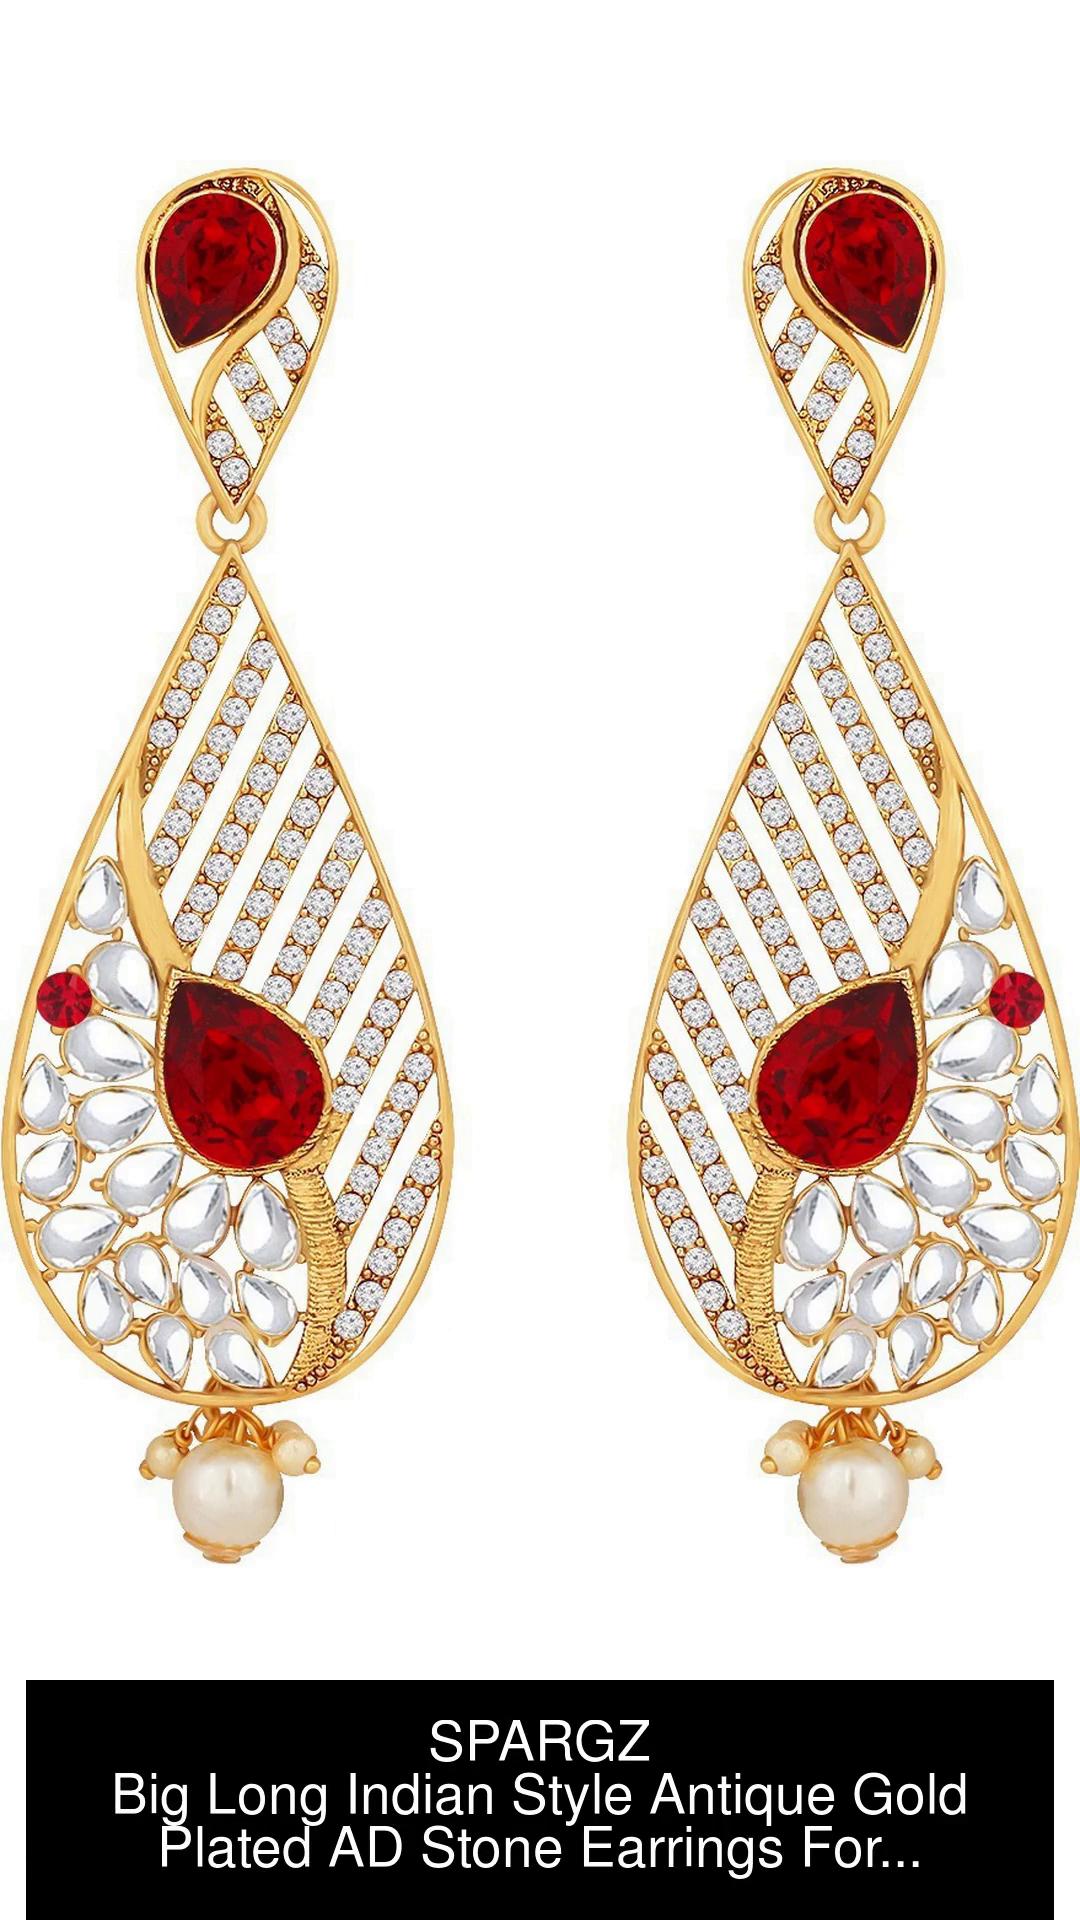 Silver Earrings Long Small Jhumki Earrings Indian Earrings Trendy Earrings  for Women And Girls Wedding Anniversary Girls BY RAUTELACREATION   Amazonin Jewellery